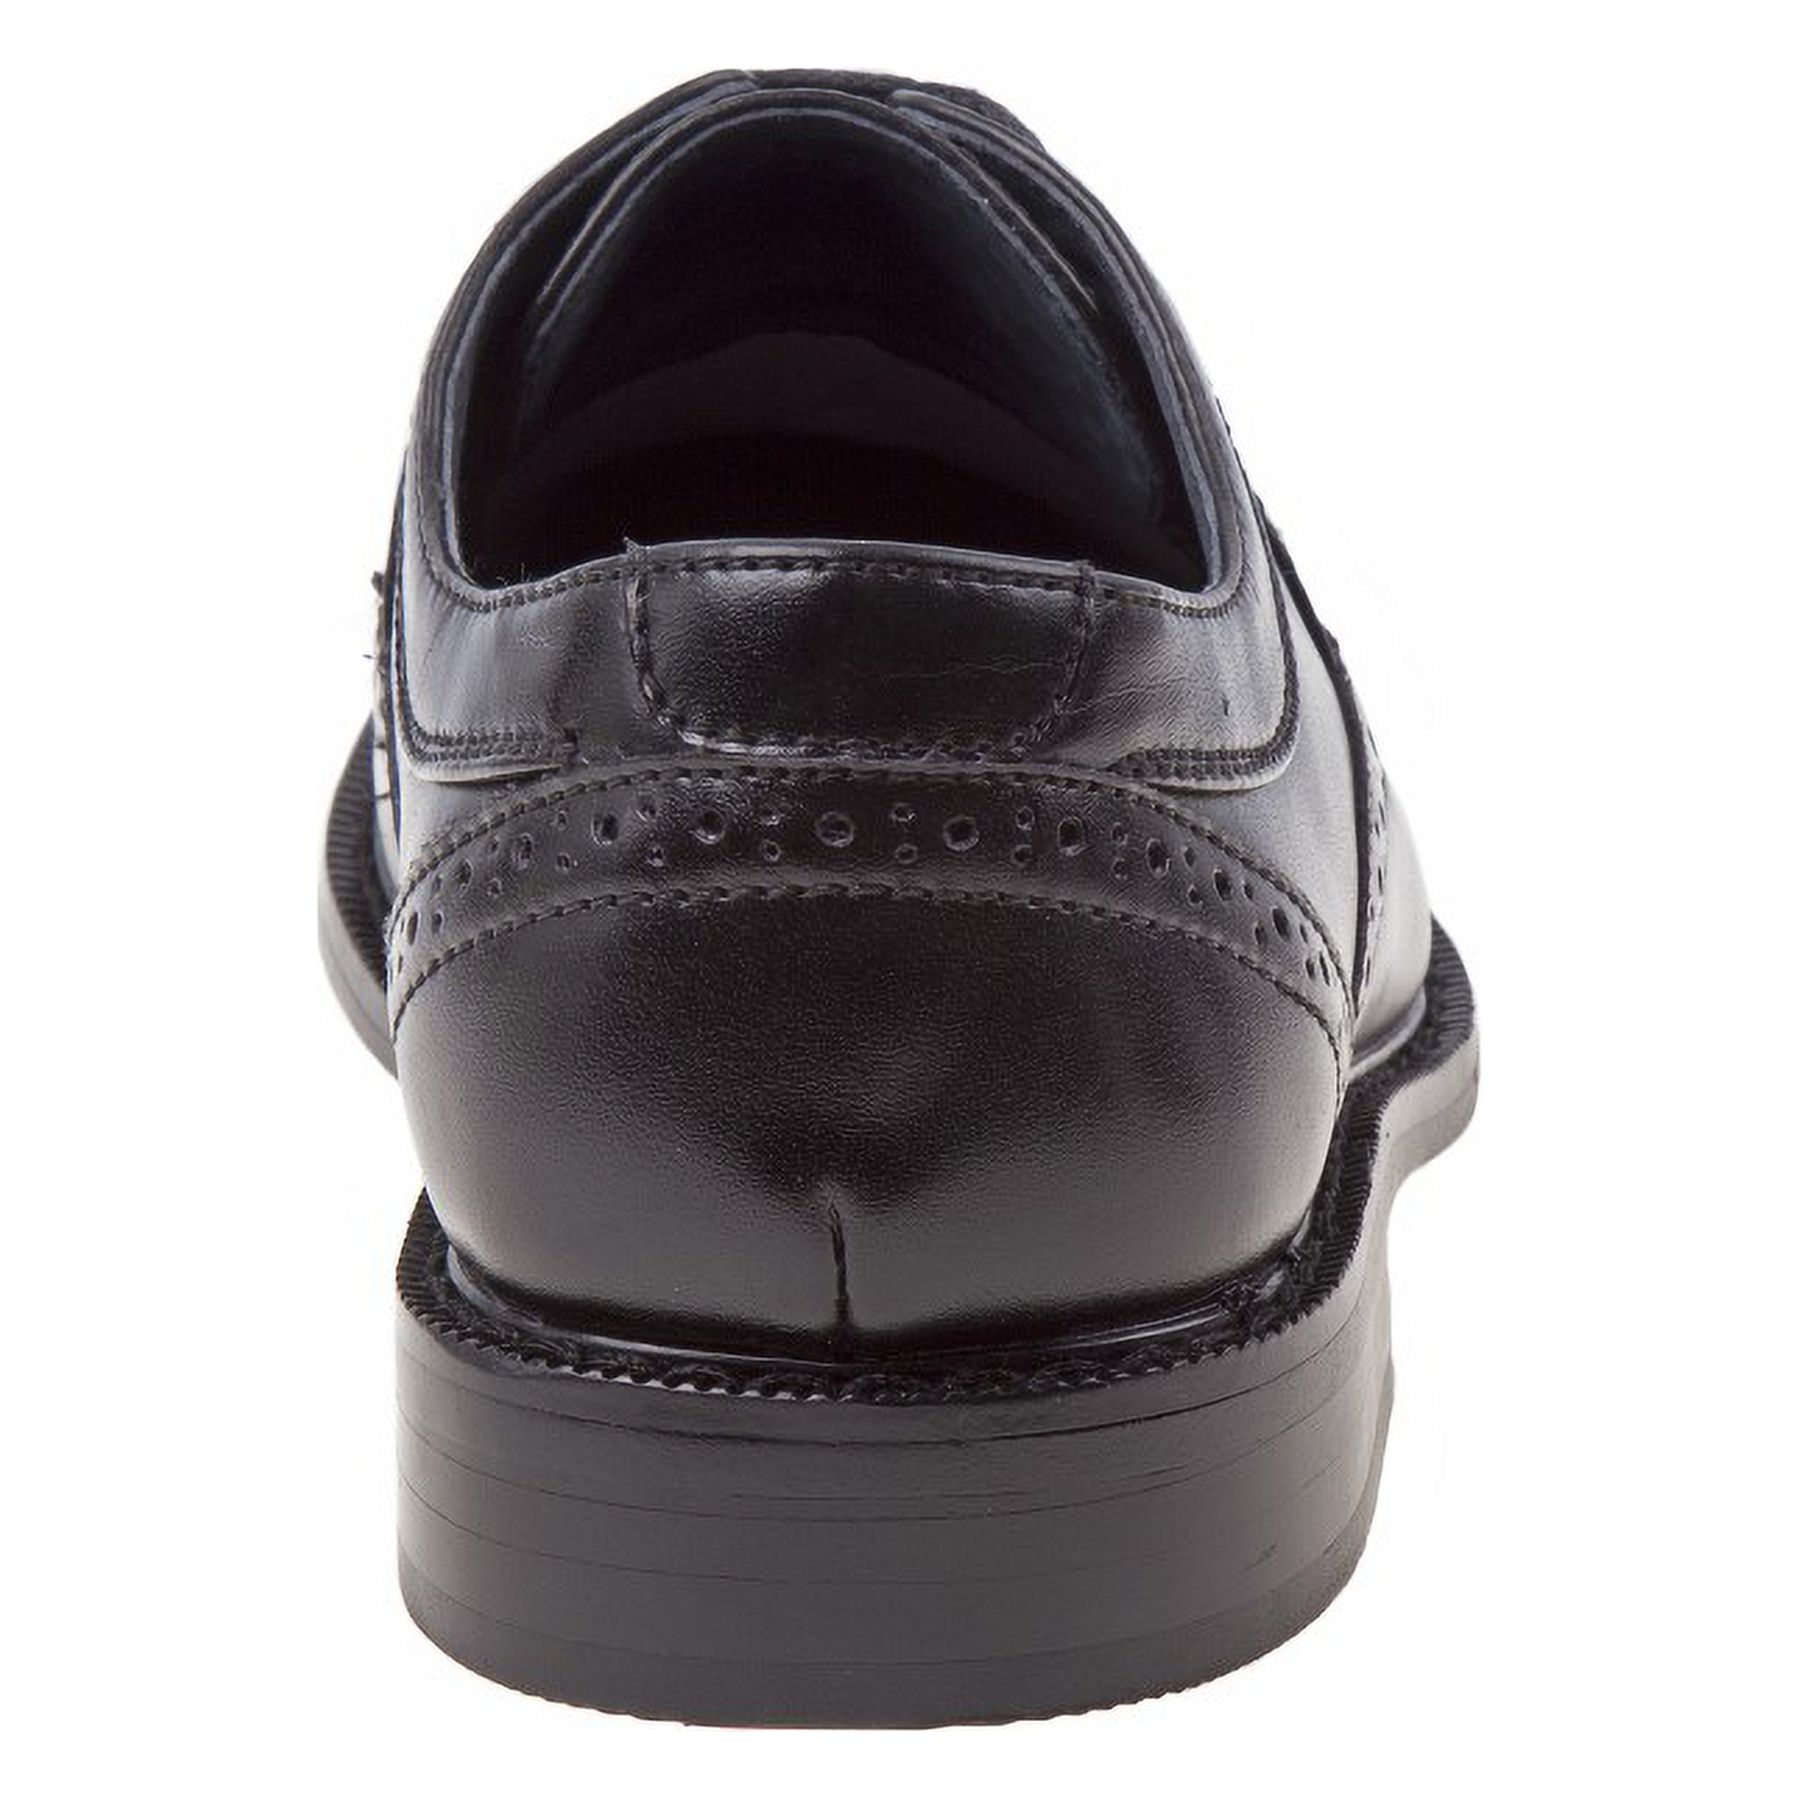 Joseph Allen Boys Lace Child Dress Shoes - Black, 4 - image 3 of 4